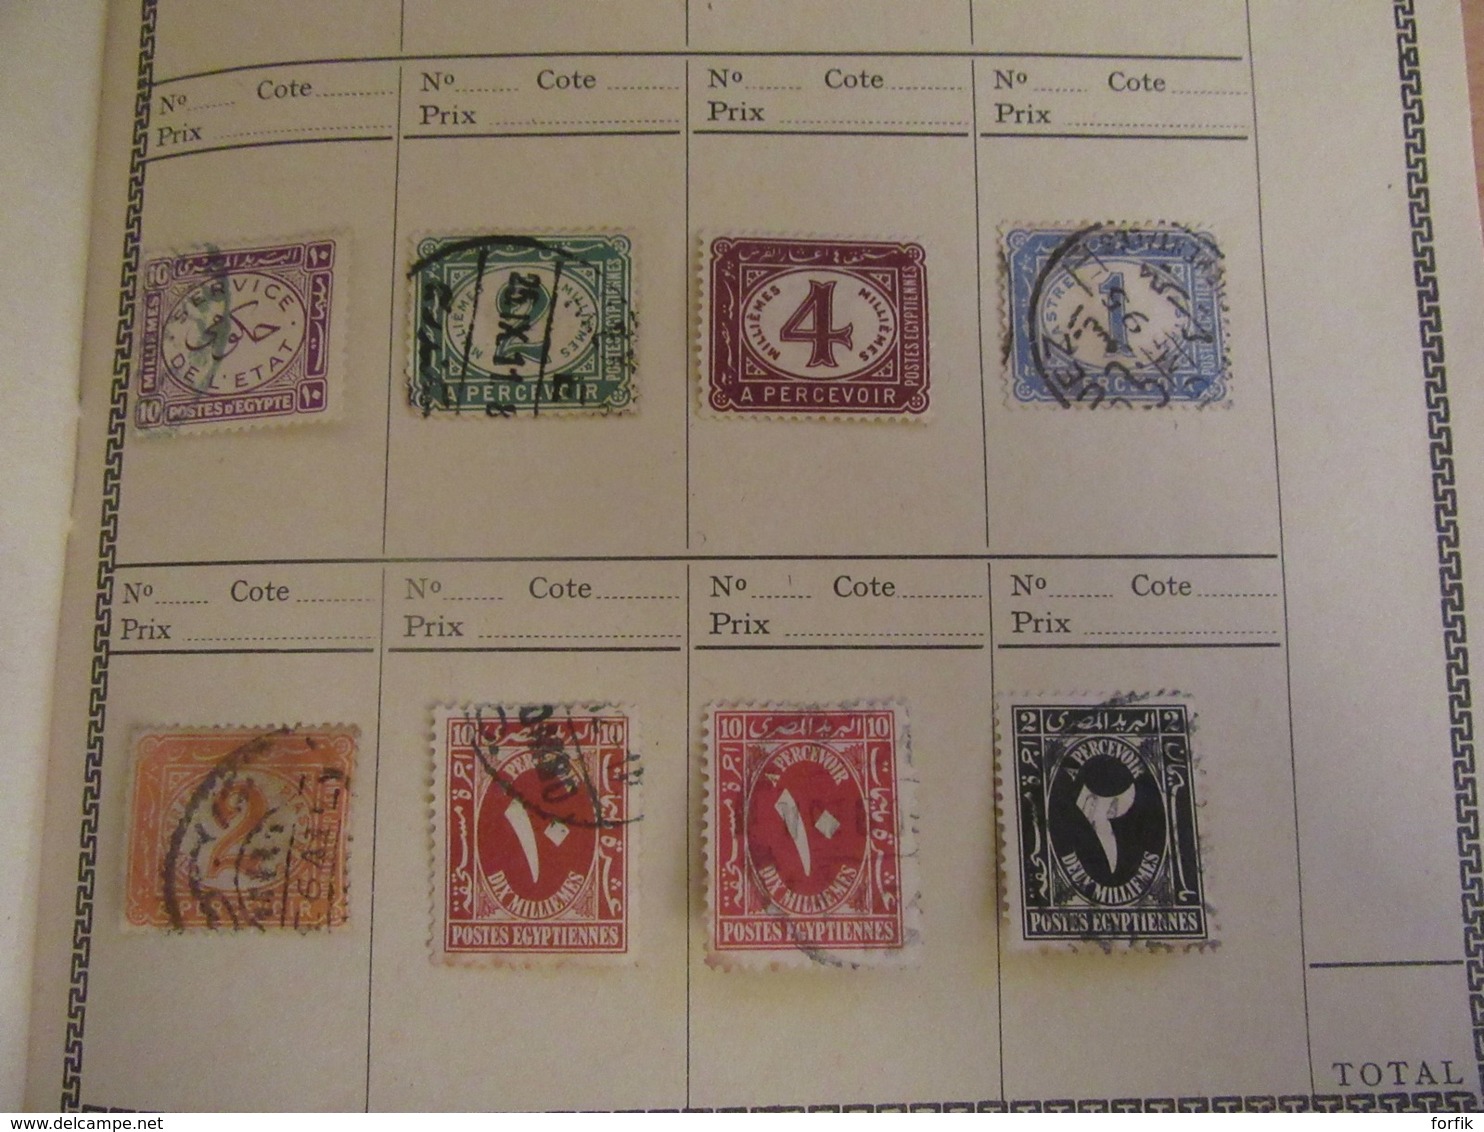 Egypte - Collection de 159 timbres en carnet - Plus ancien YT n°9 - Neufs sur charnières et oblitérés + taxe et service